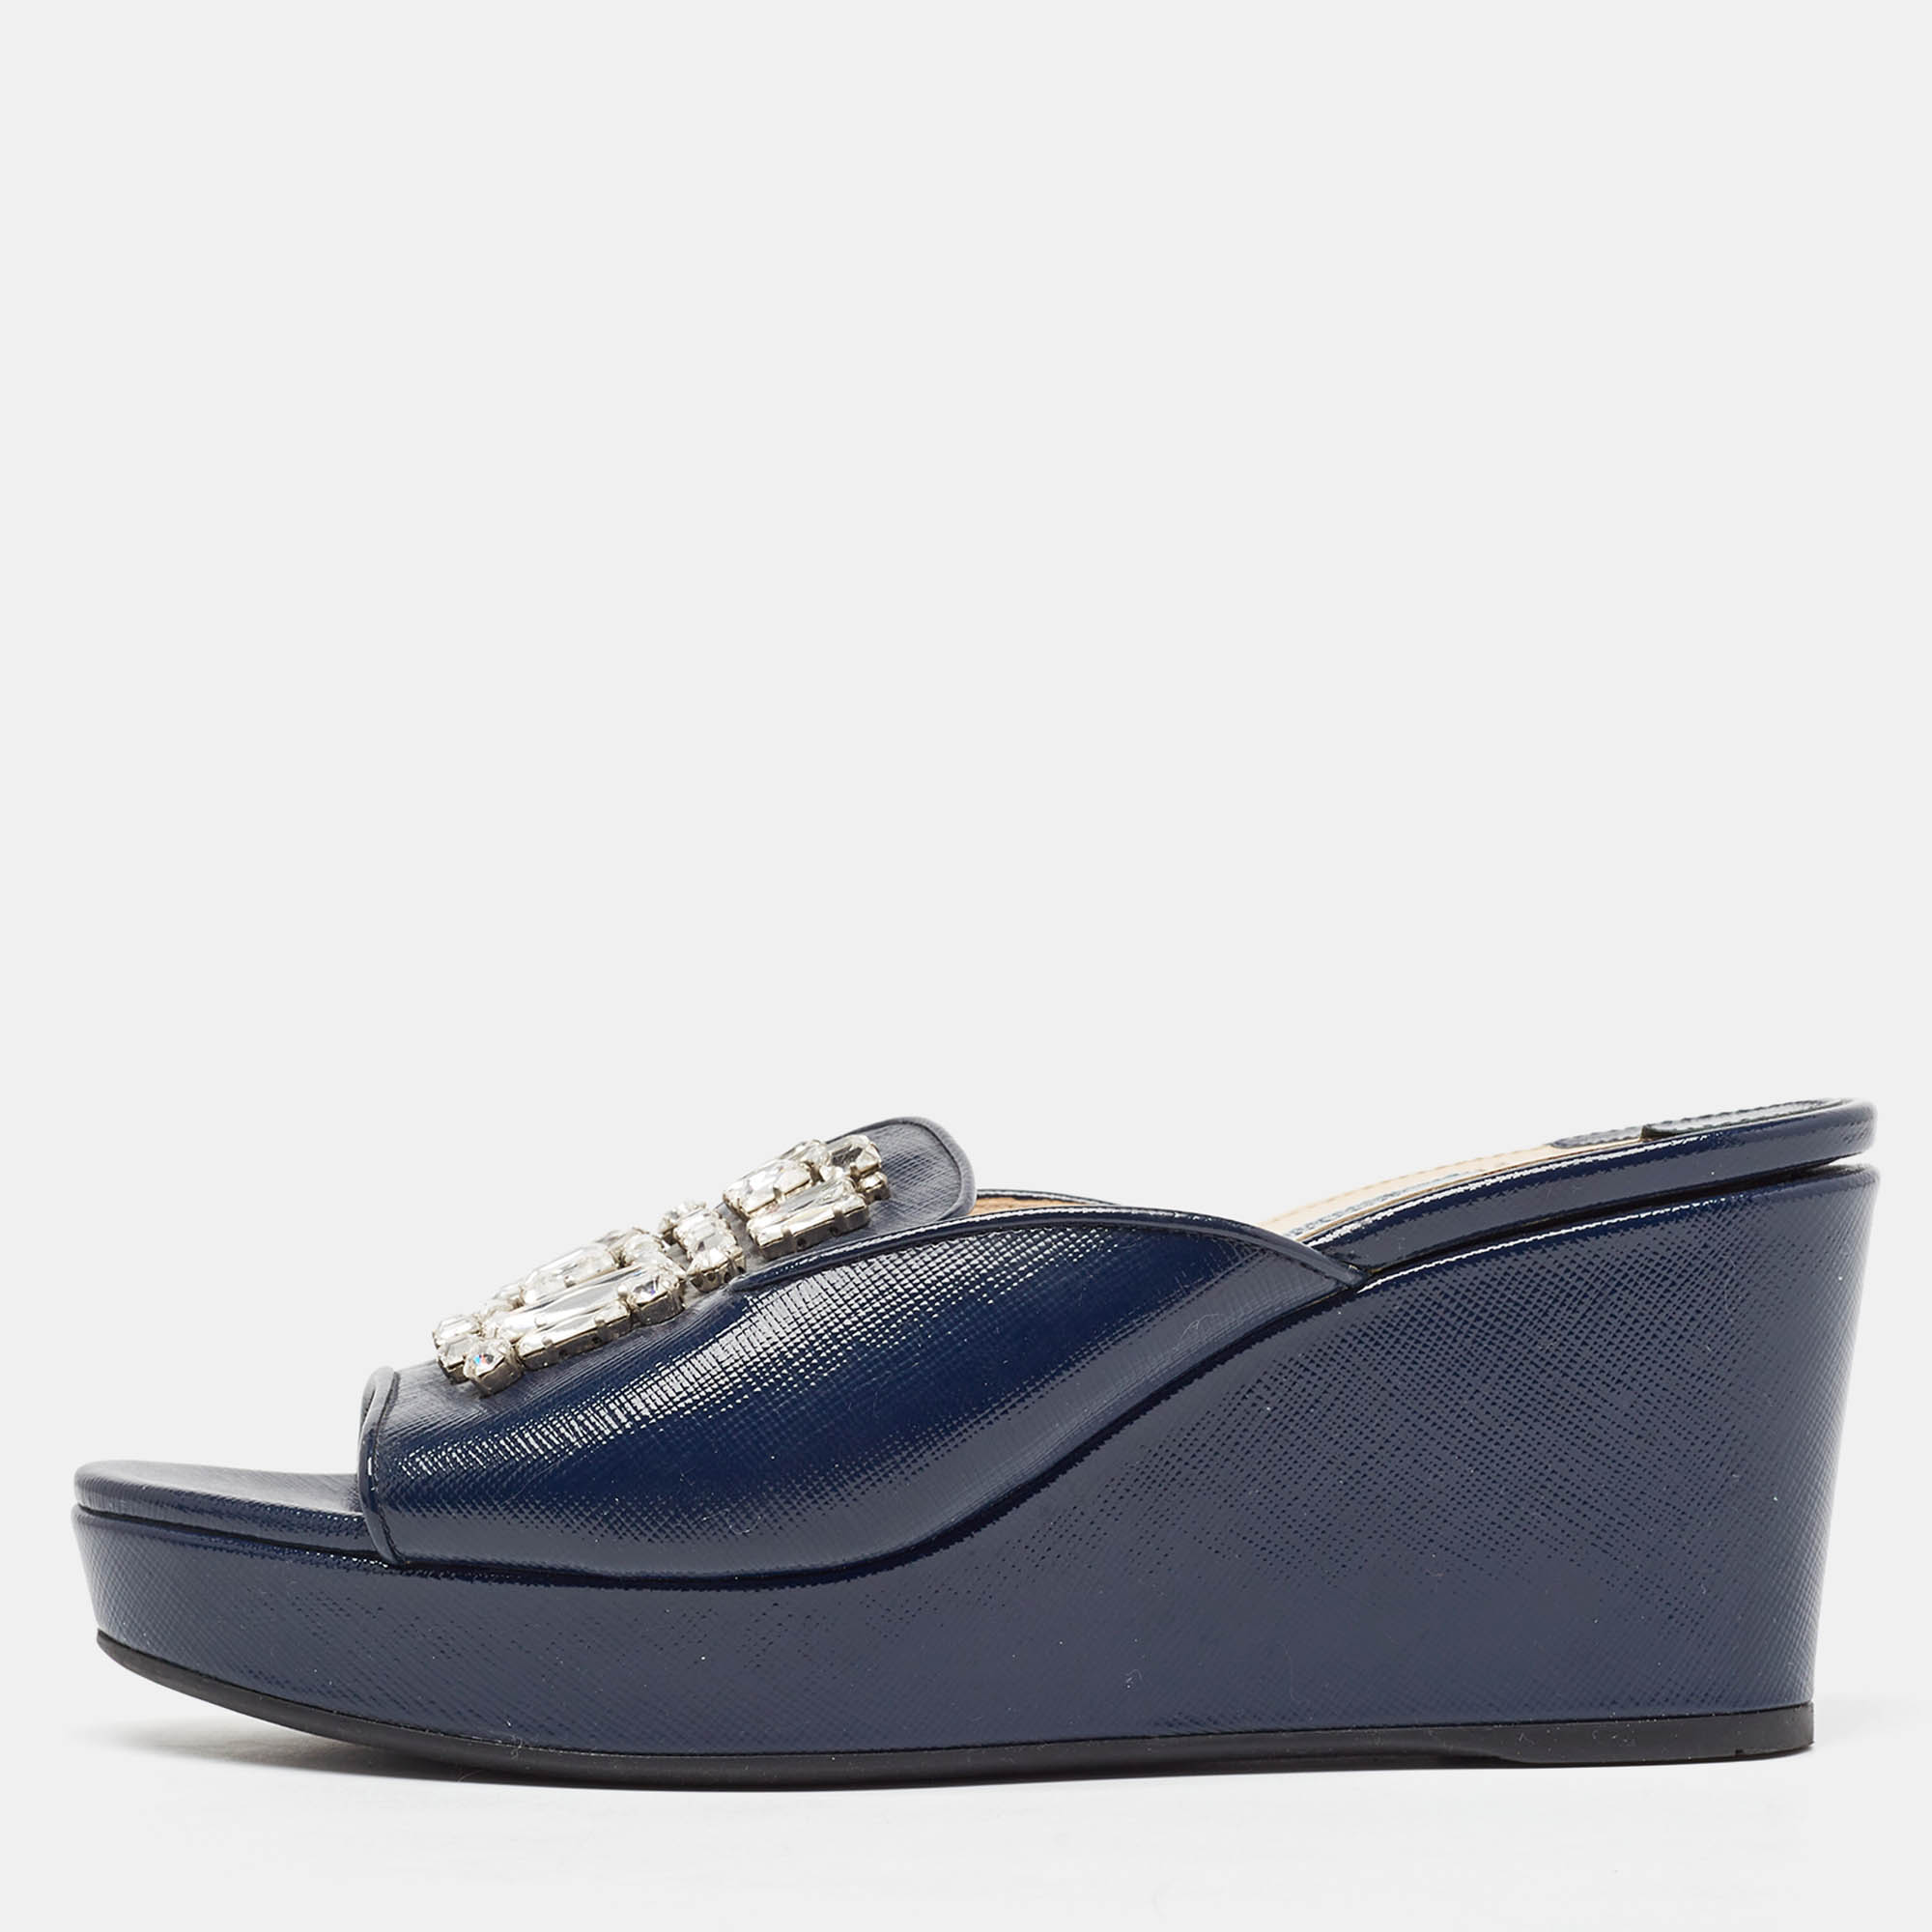 Prada blue patent leather crystal embellished wedge slide sandals size 39